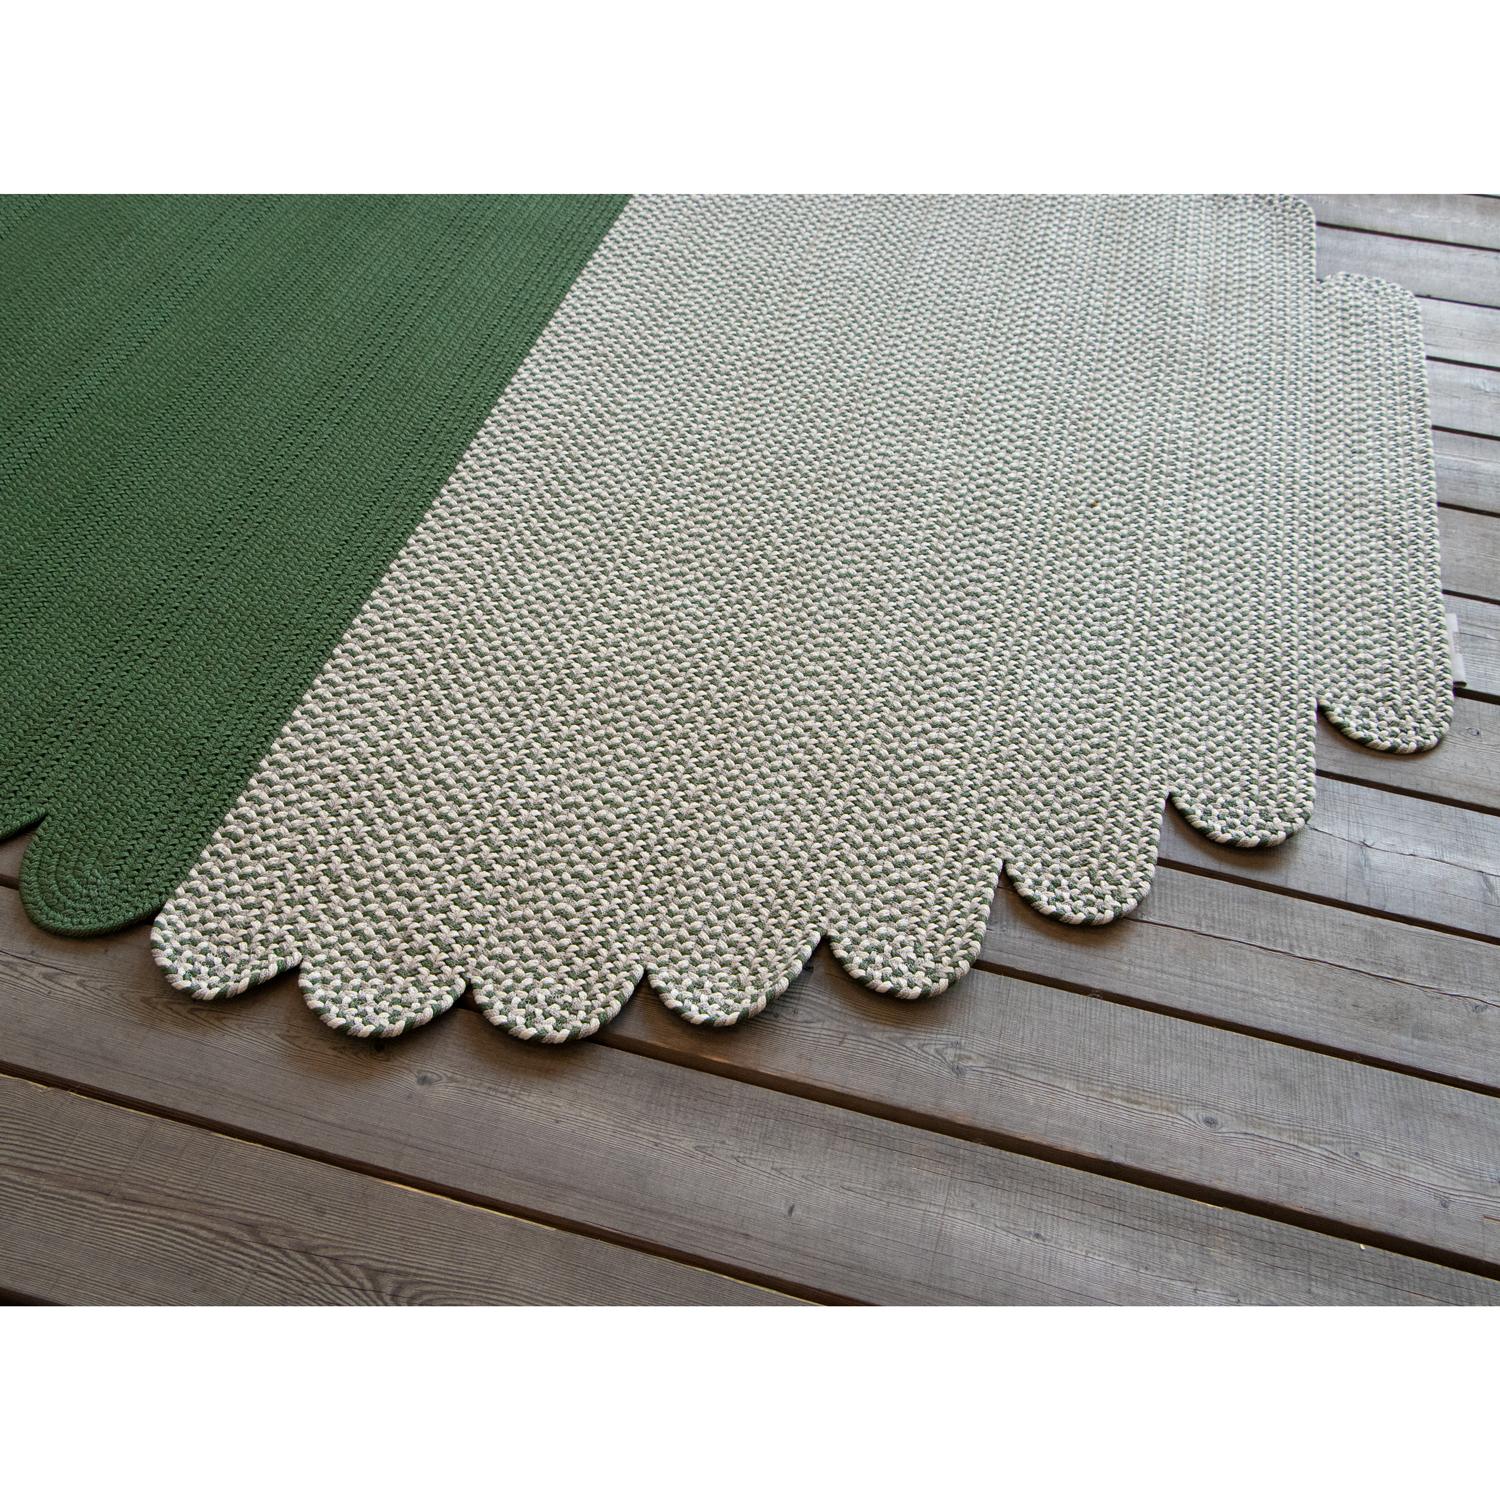 Modern Tappeto foglia outdoor verde grigio design italiano Deanna Comellini 176x300cm For Sale